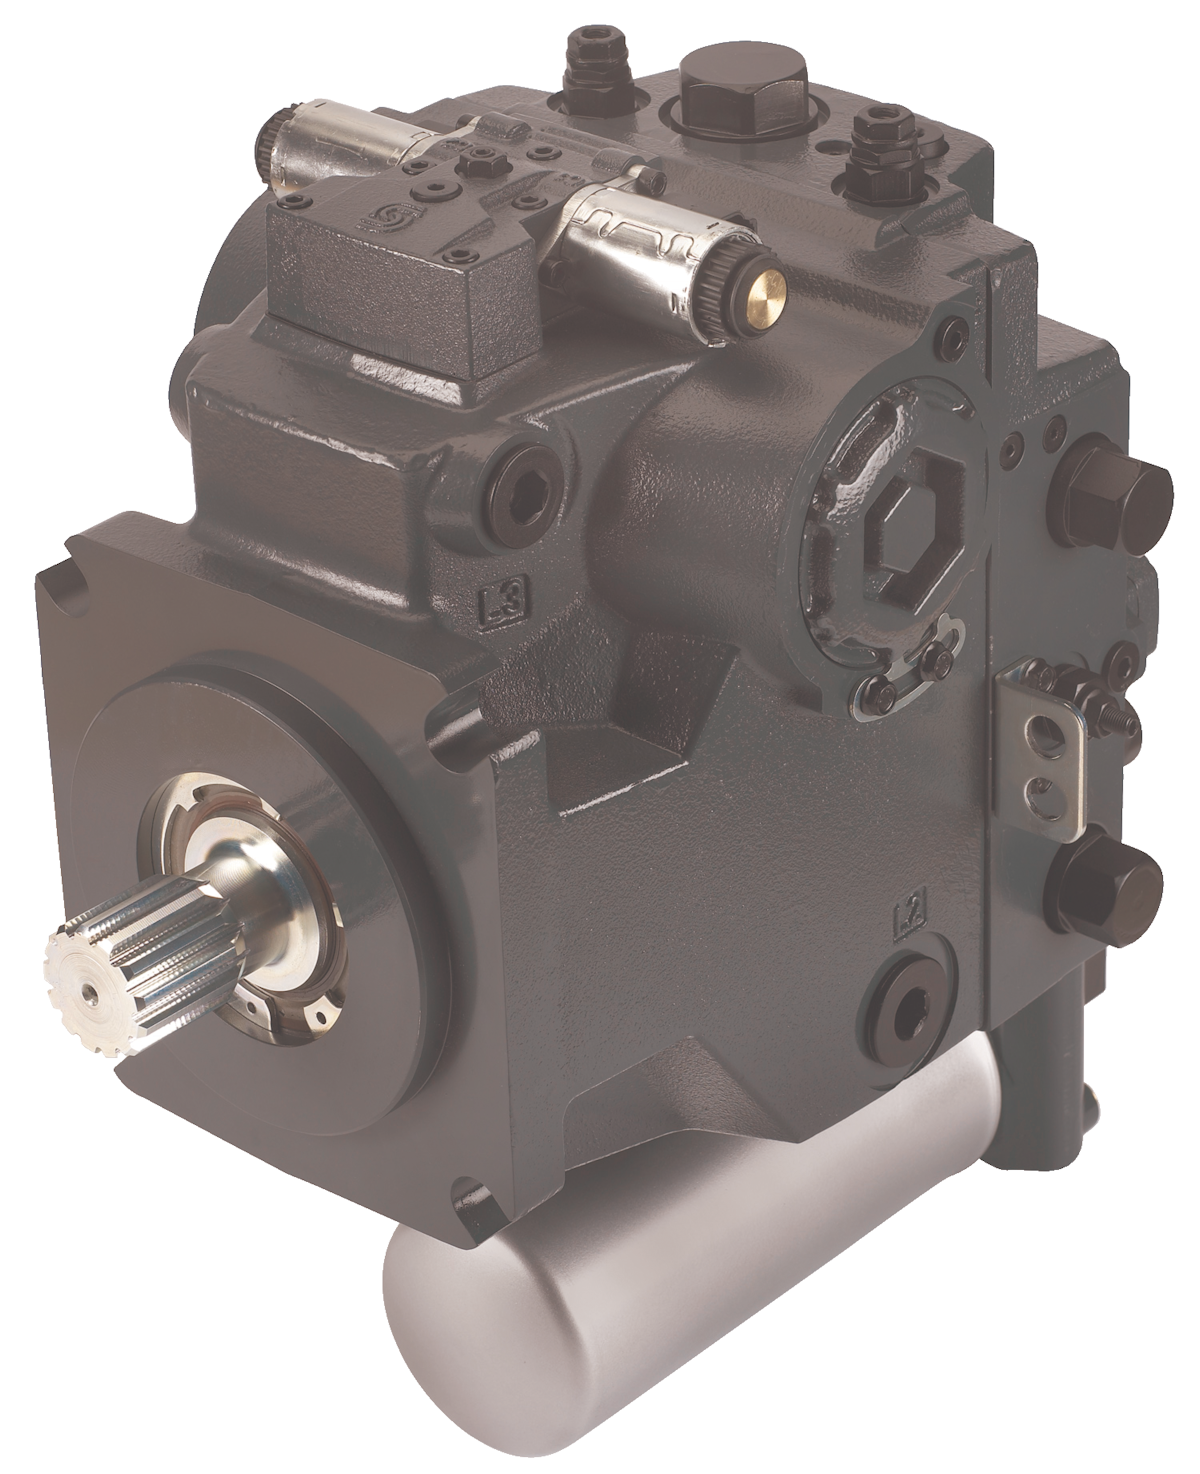 H1 115/130cc pump From: Danfoss - Danfoss Power Solutions | OEM Off-Highway